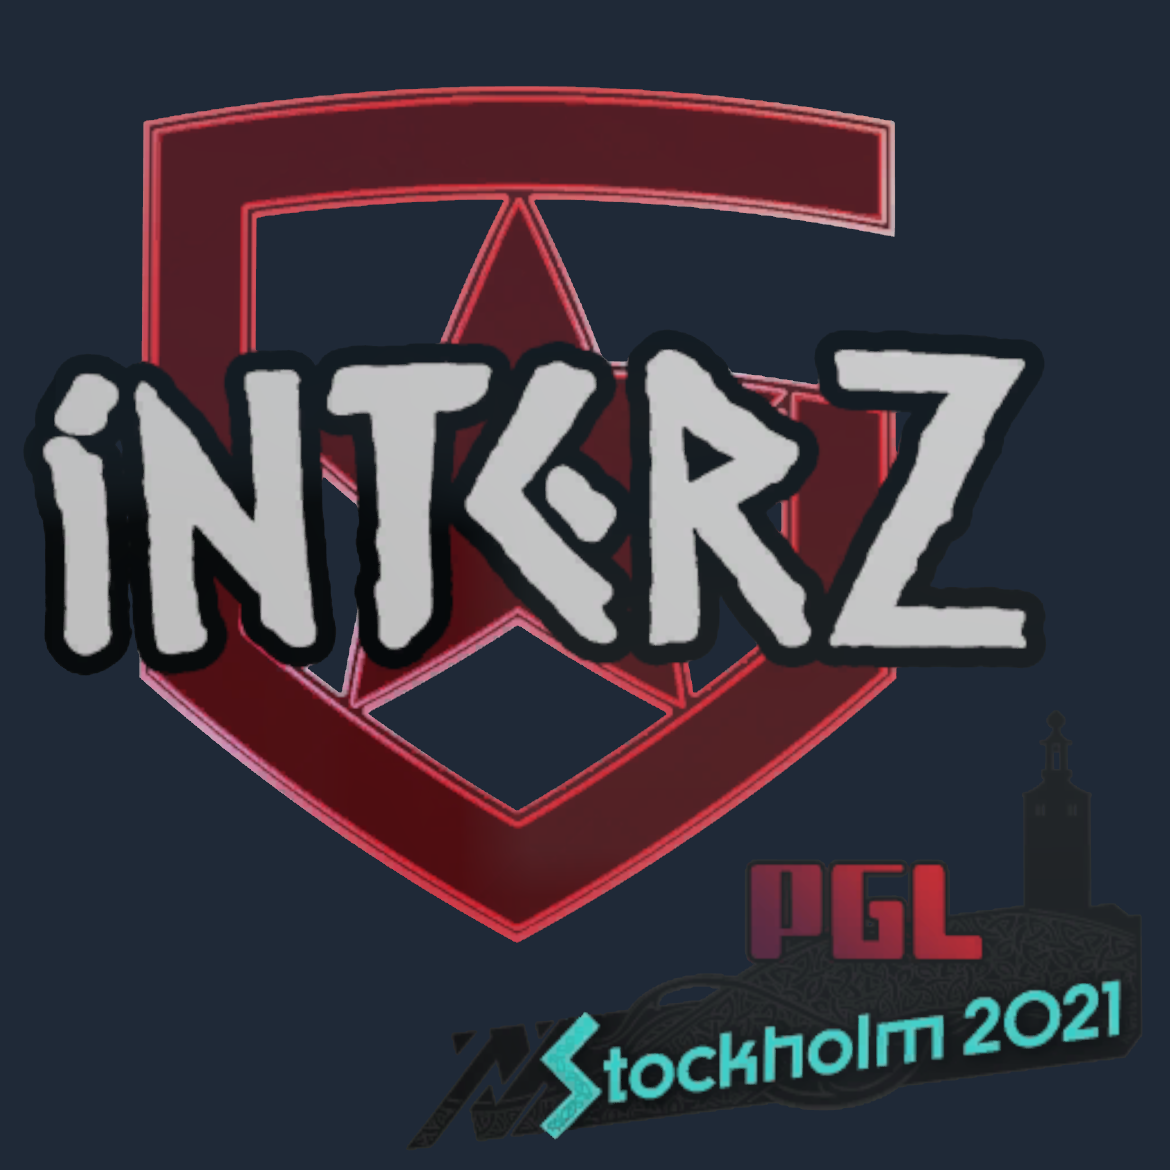 Sticker | interz | Stockholm 2021 Screenshot